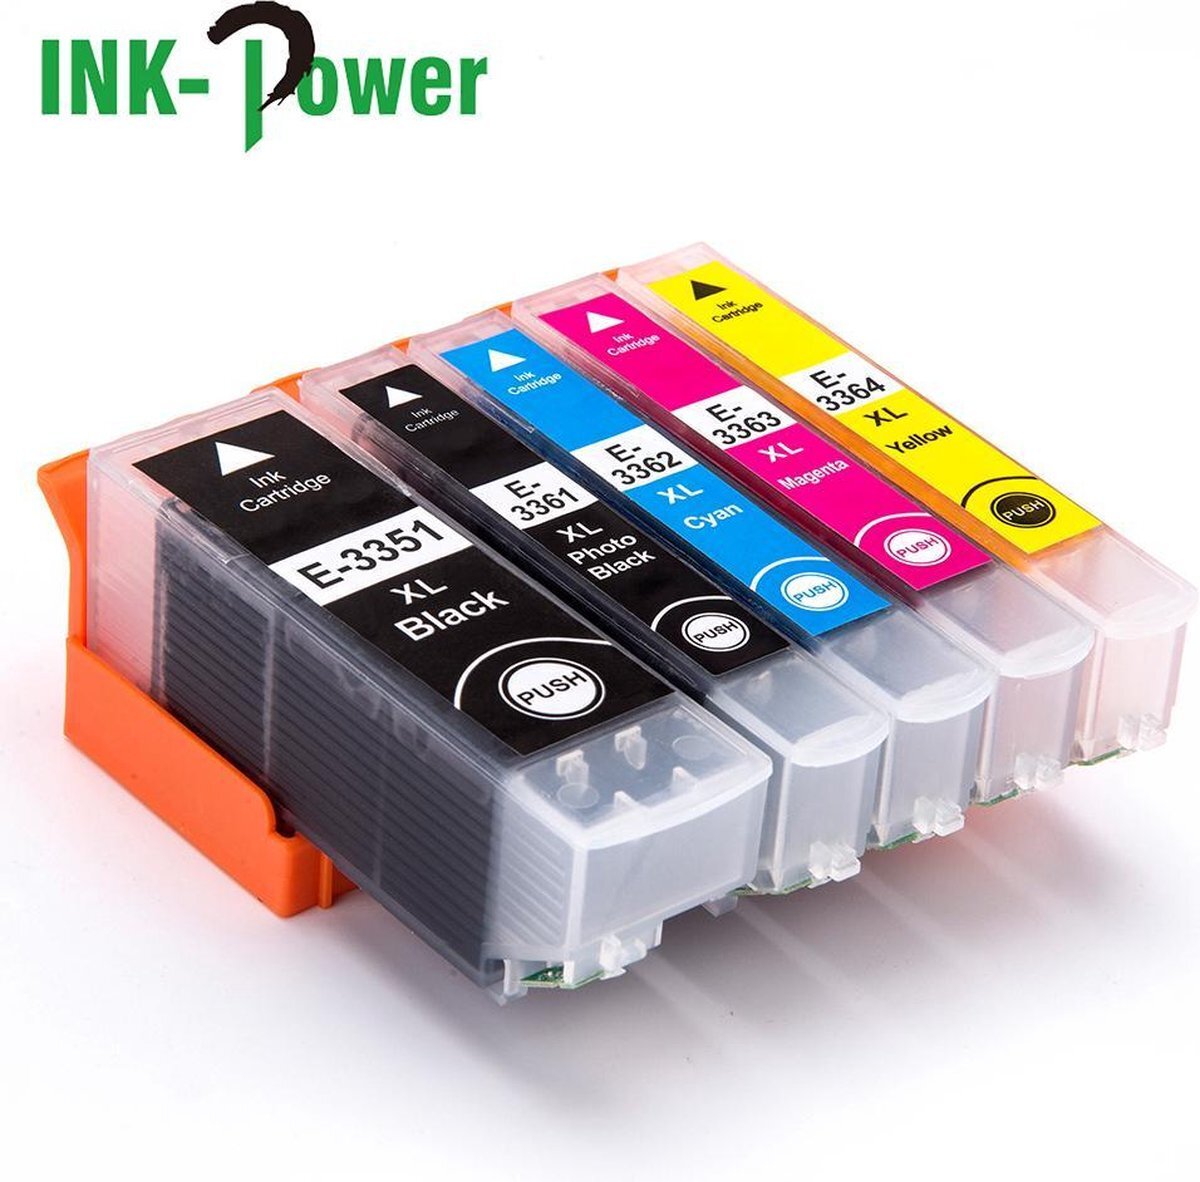 Ink Power Inktcartridge voor Epson 33XL - Multipack van 5 stuks - Met Chip - 33XL - Inktpatronen - Voor Expression Premium Printers: XP-530 / XP-540 / XP-630 / XP-635 / XP-640 / XP-645 / XP-830 / XP-900 / XP-7100 - Inkt Cartridges